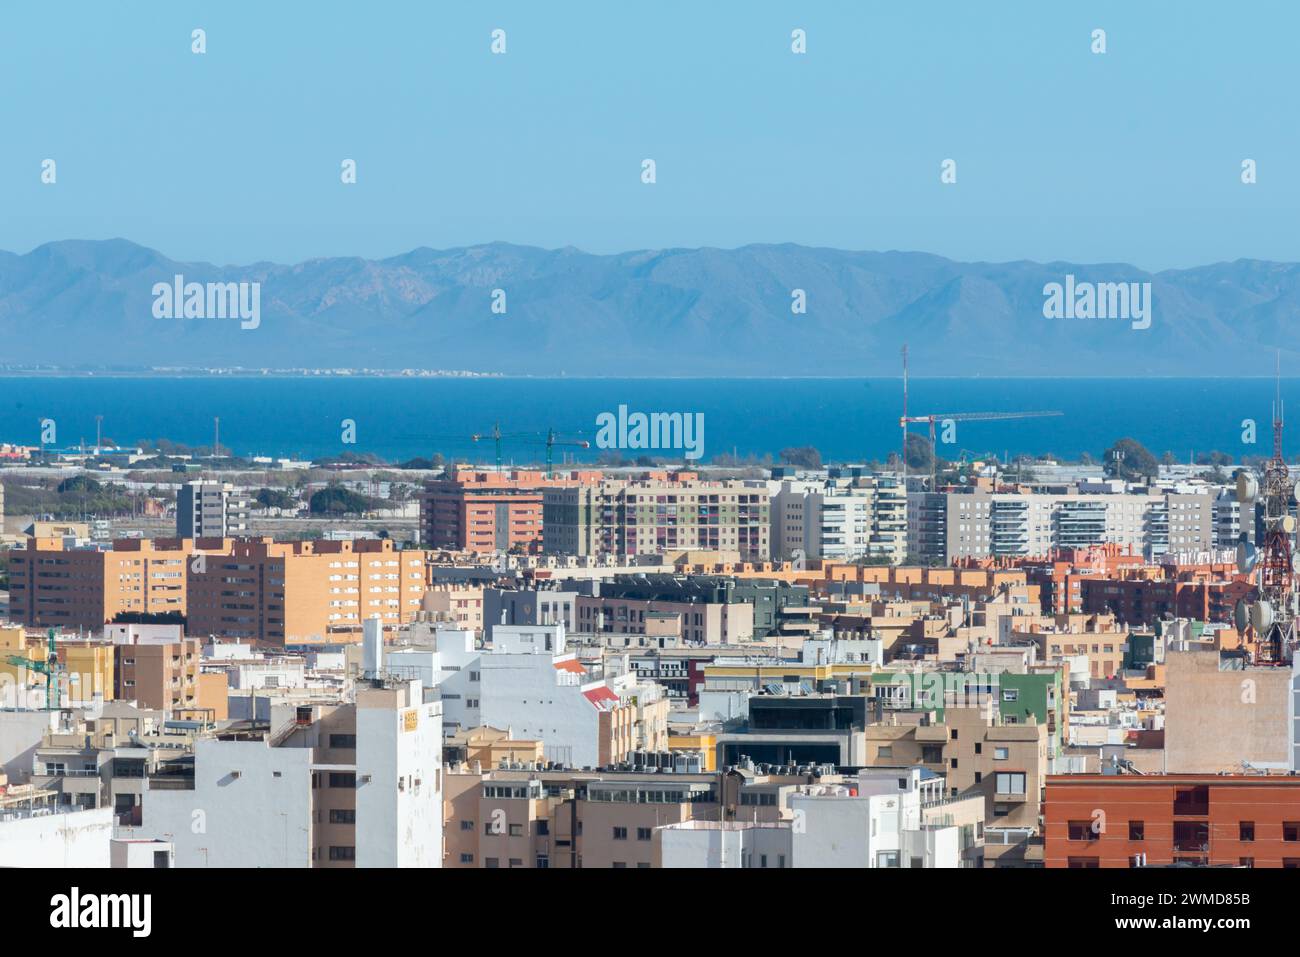 ALMERIA, SPANIEN - 23. FEBRUAR 2024 Panorama der spanischen Stadt Almeria in der autonomen Gemeinschaft Andalusien vom berühmten Hügel Cerro de aus gesehen Stockfoto